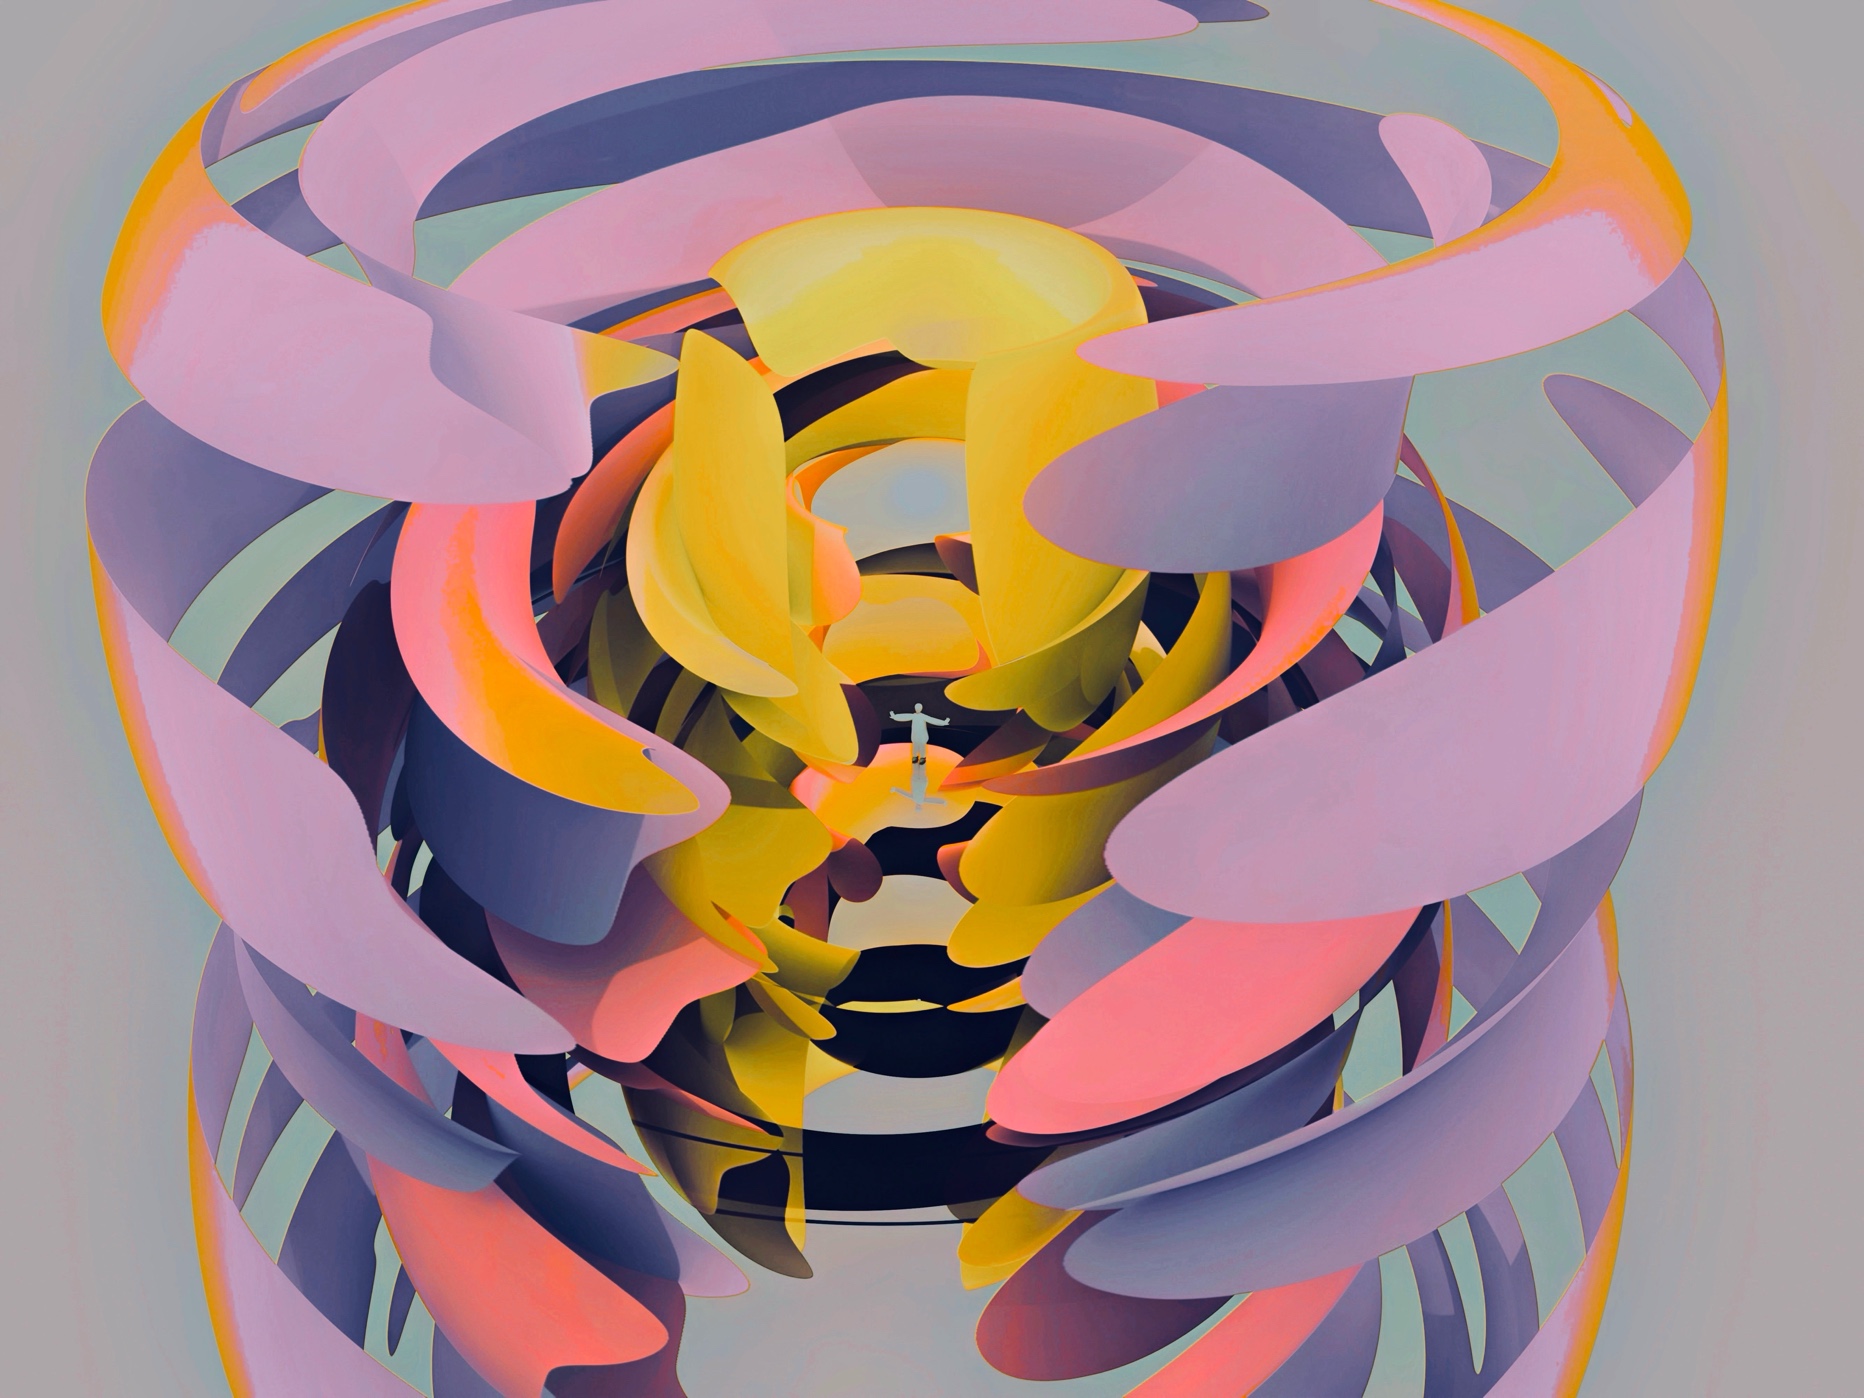 Atsushigraphのデジタルアート「Buffer」。紫や黄色、淡いピンクの色の帯が中央に立つ小さな人間を包み込んでいる描写がされた作品です。2024年作。3DCGとデジタルペイントで描きました。